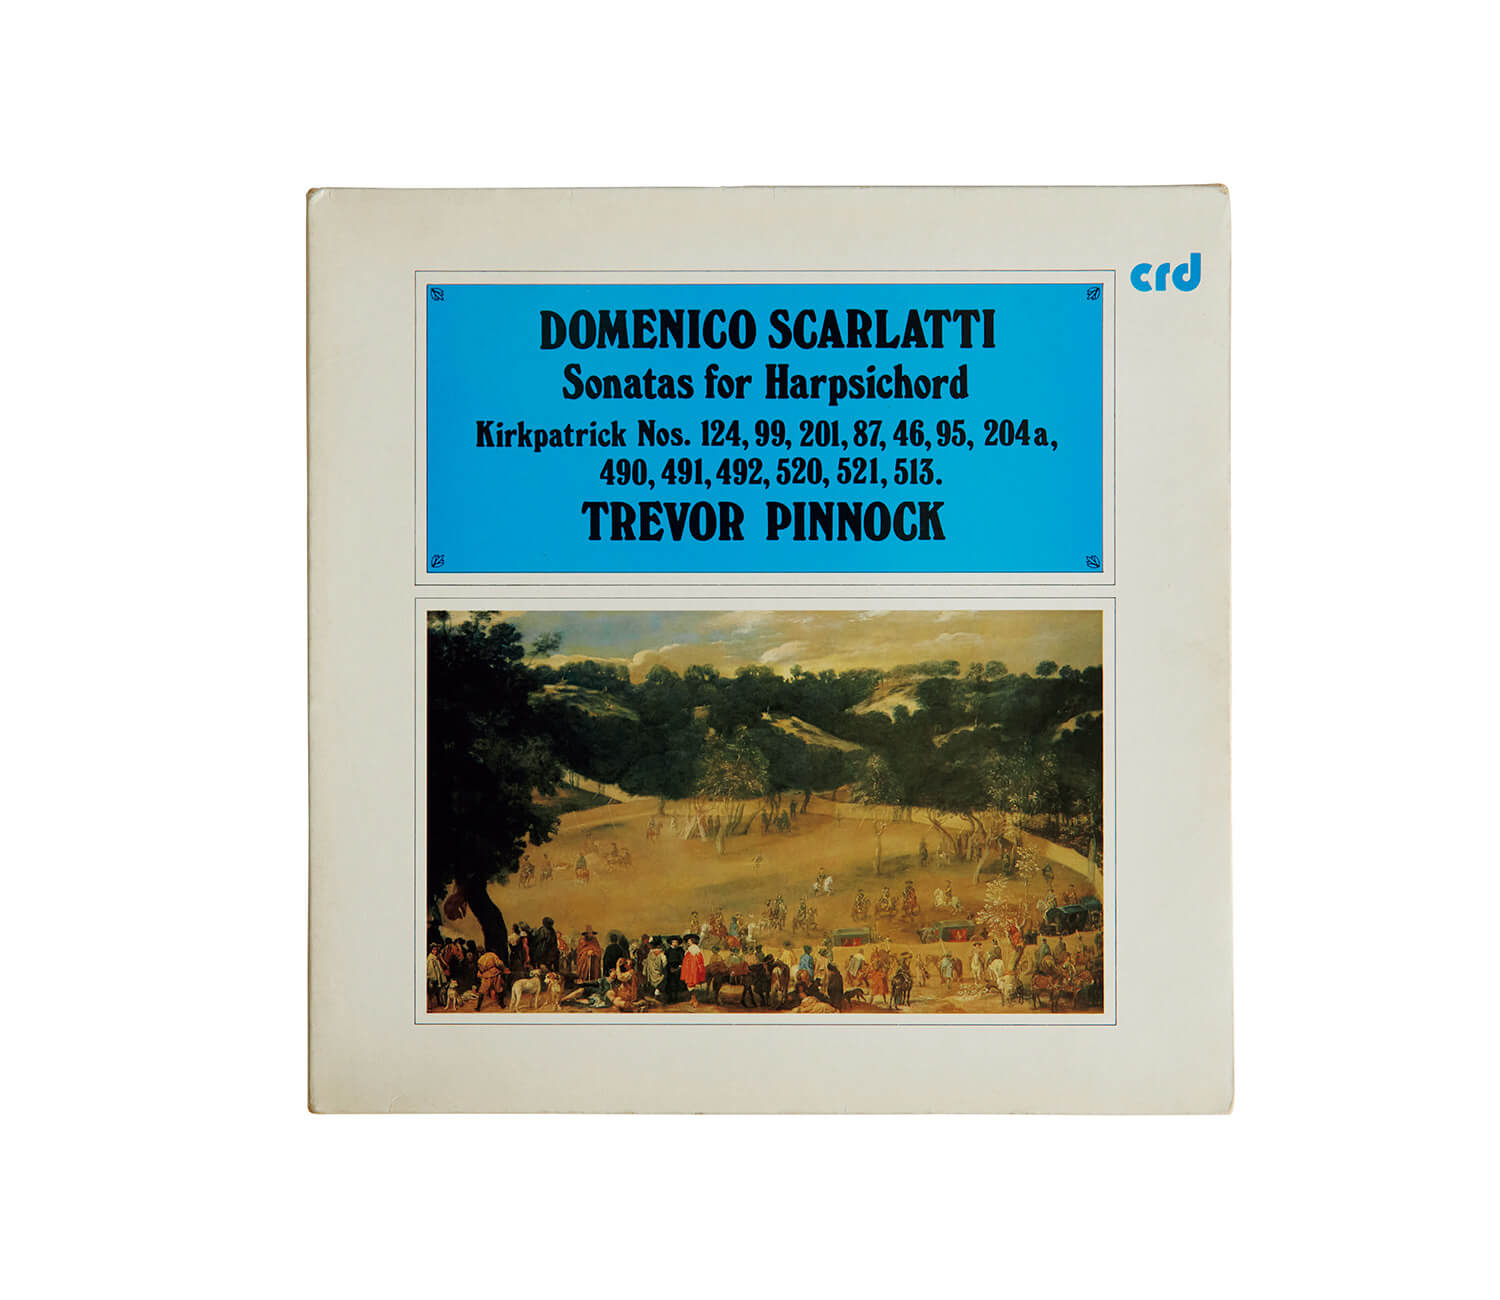 トレヴァー・ピノックが演奏した、ドメニコ・スカルラッティ「ピアノ・ソナタ集」レコードジャケット